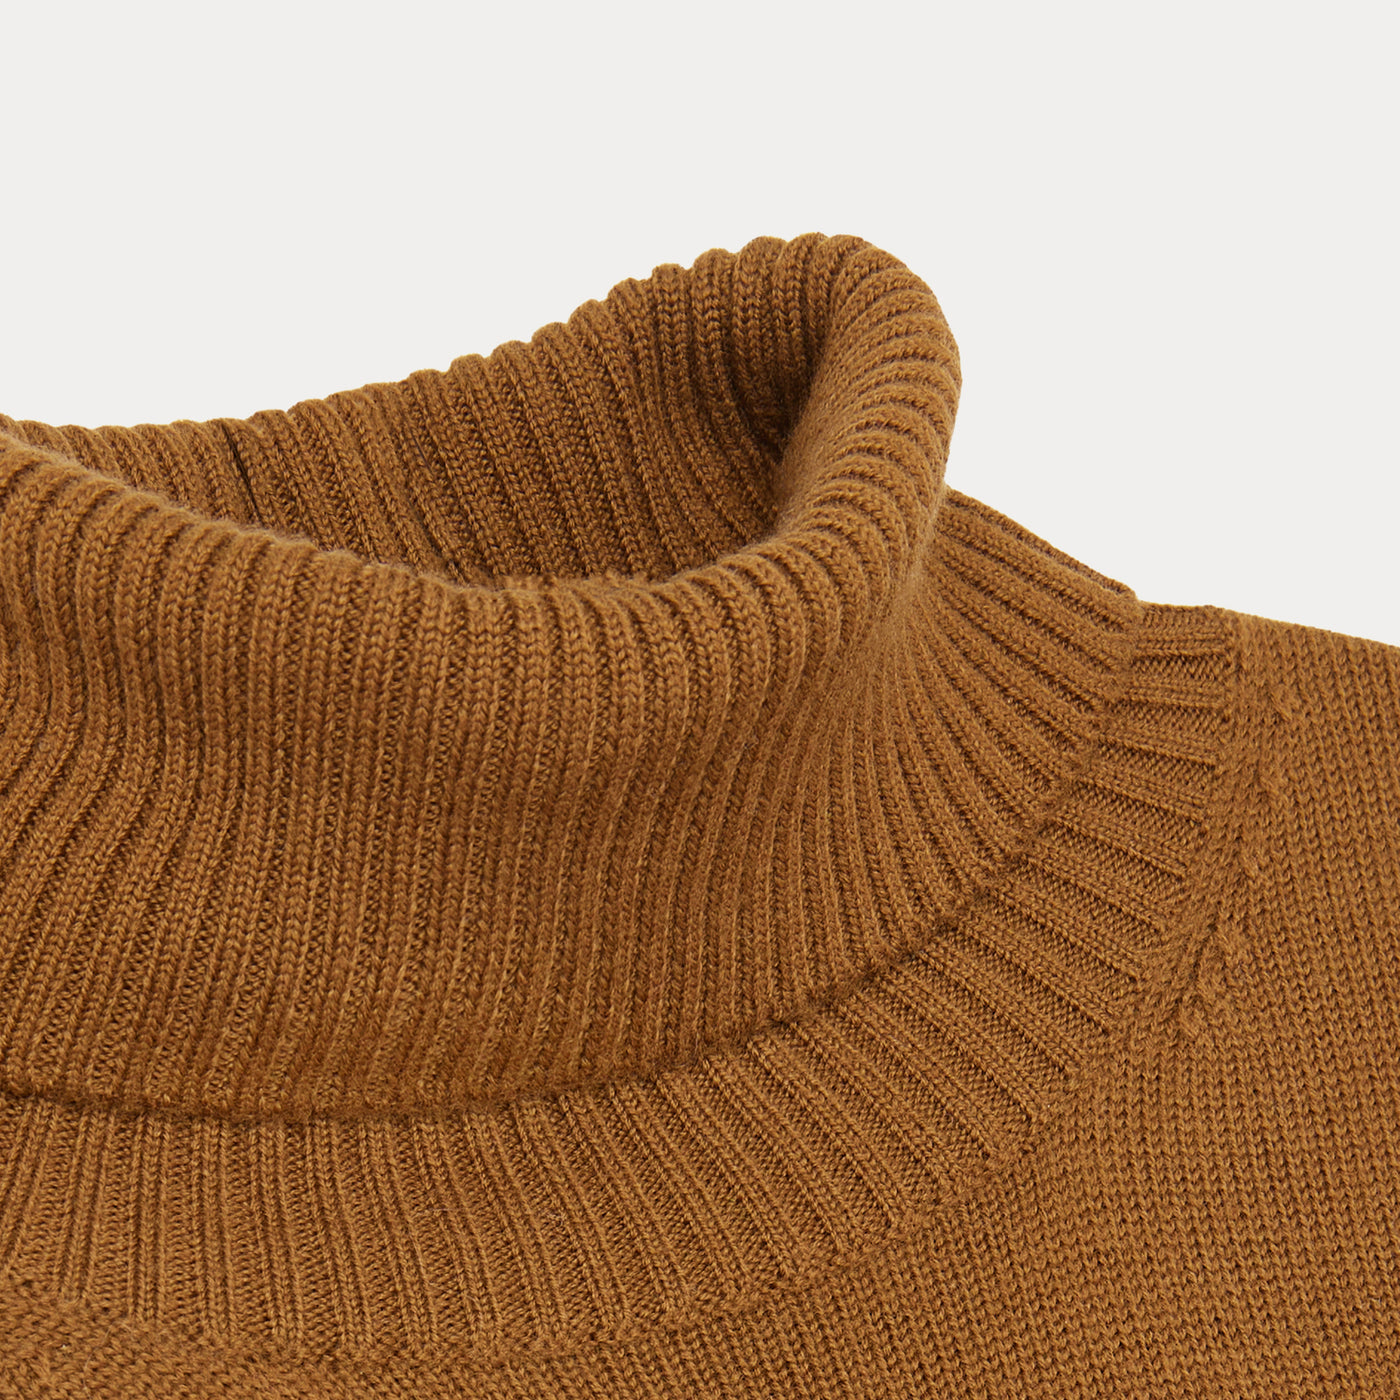 Odeon Sweater brown